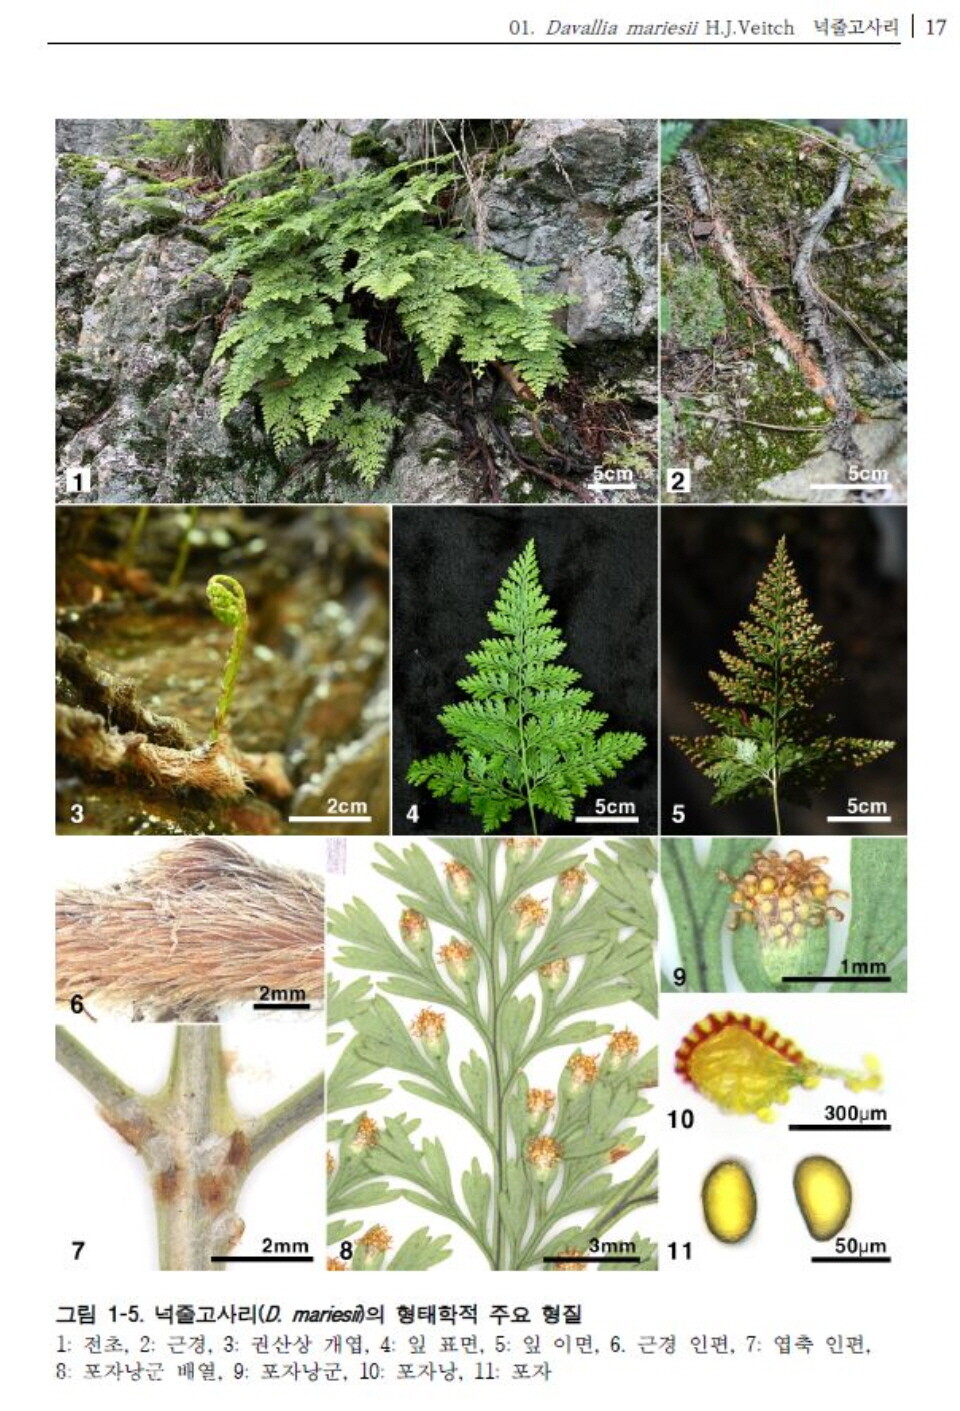 한국 산림자원식물 특성 연구 12권에 실린 ‘넉줄고사리’Ⓒ국립산림품종관리센터